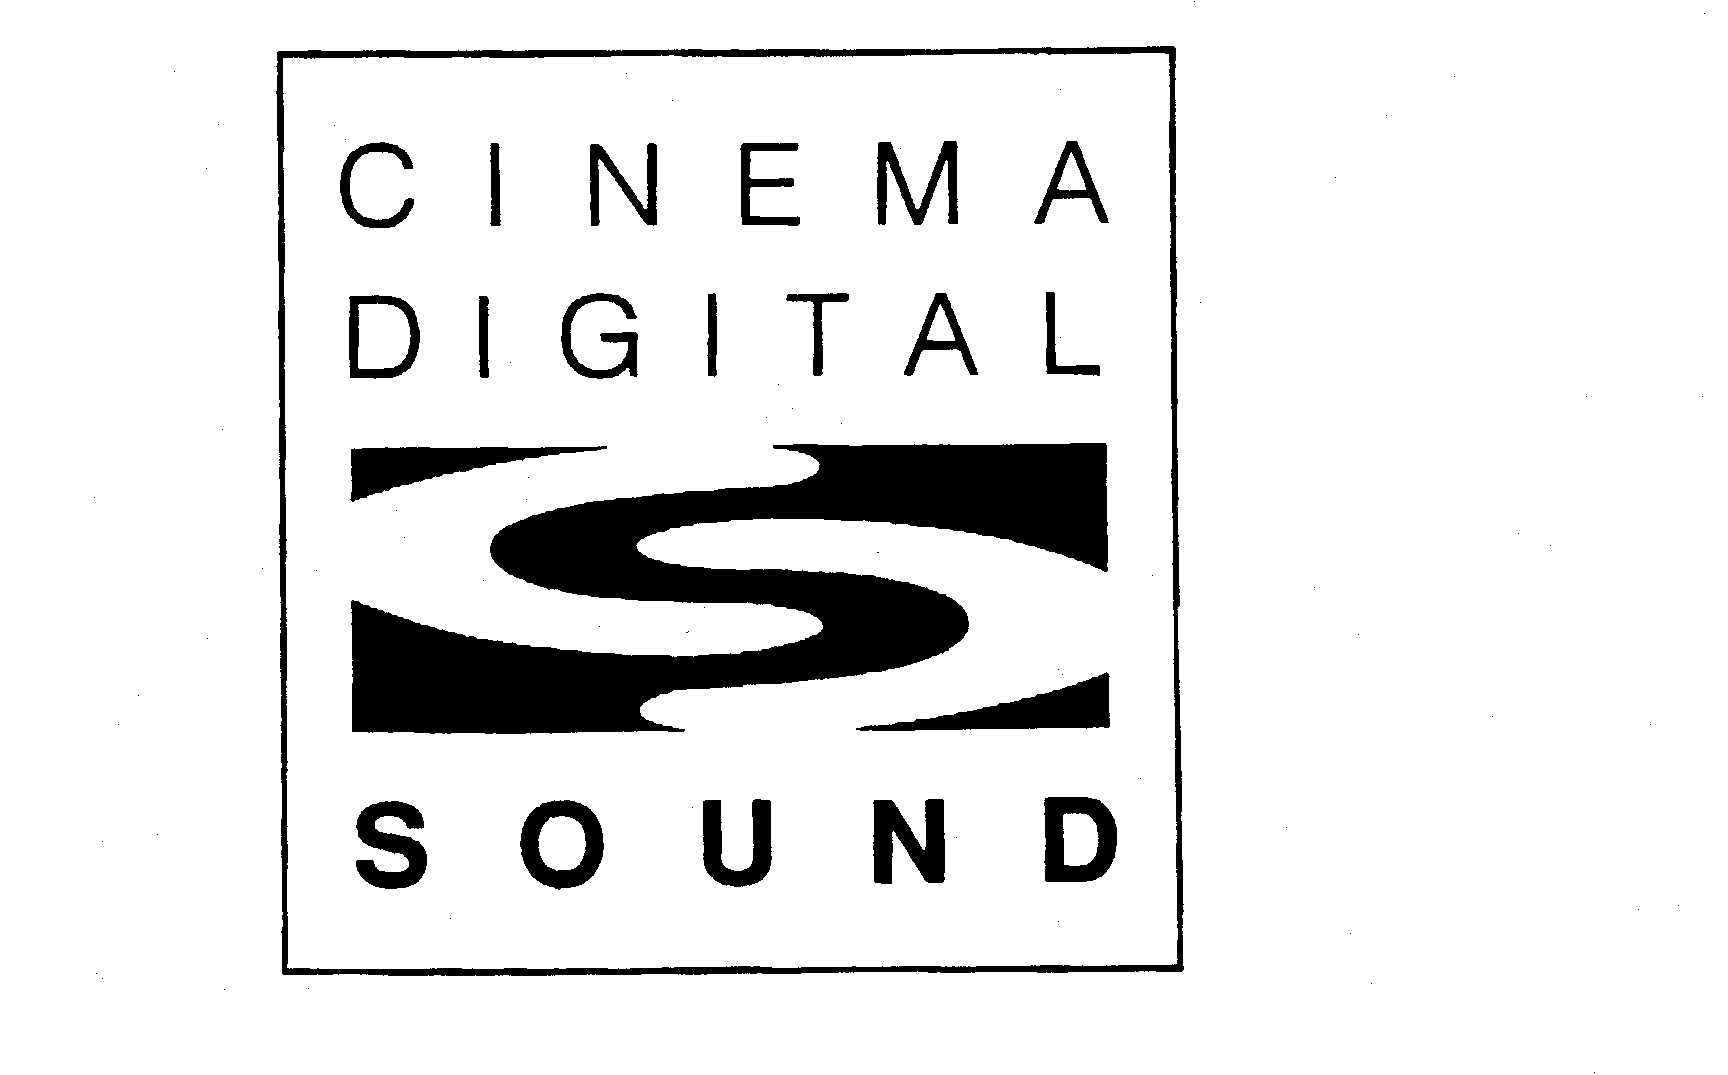  CINEMA DIGITAL SOUND